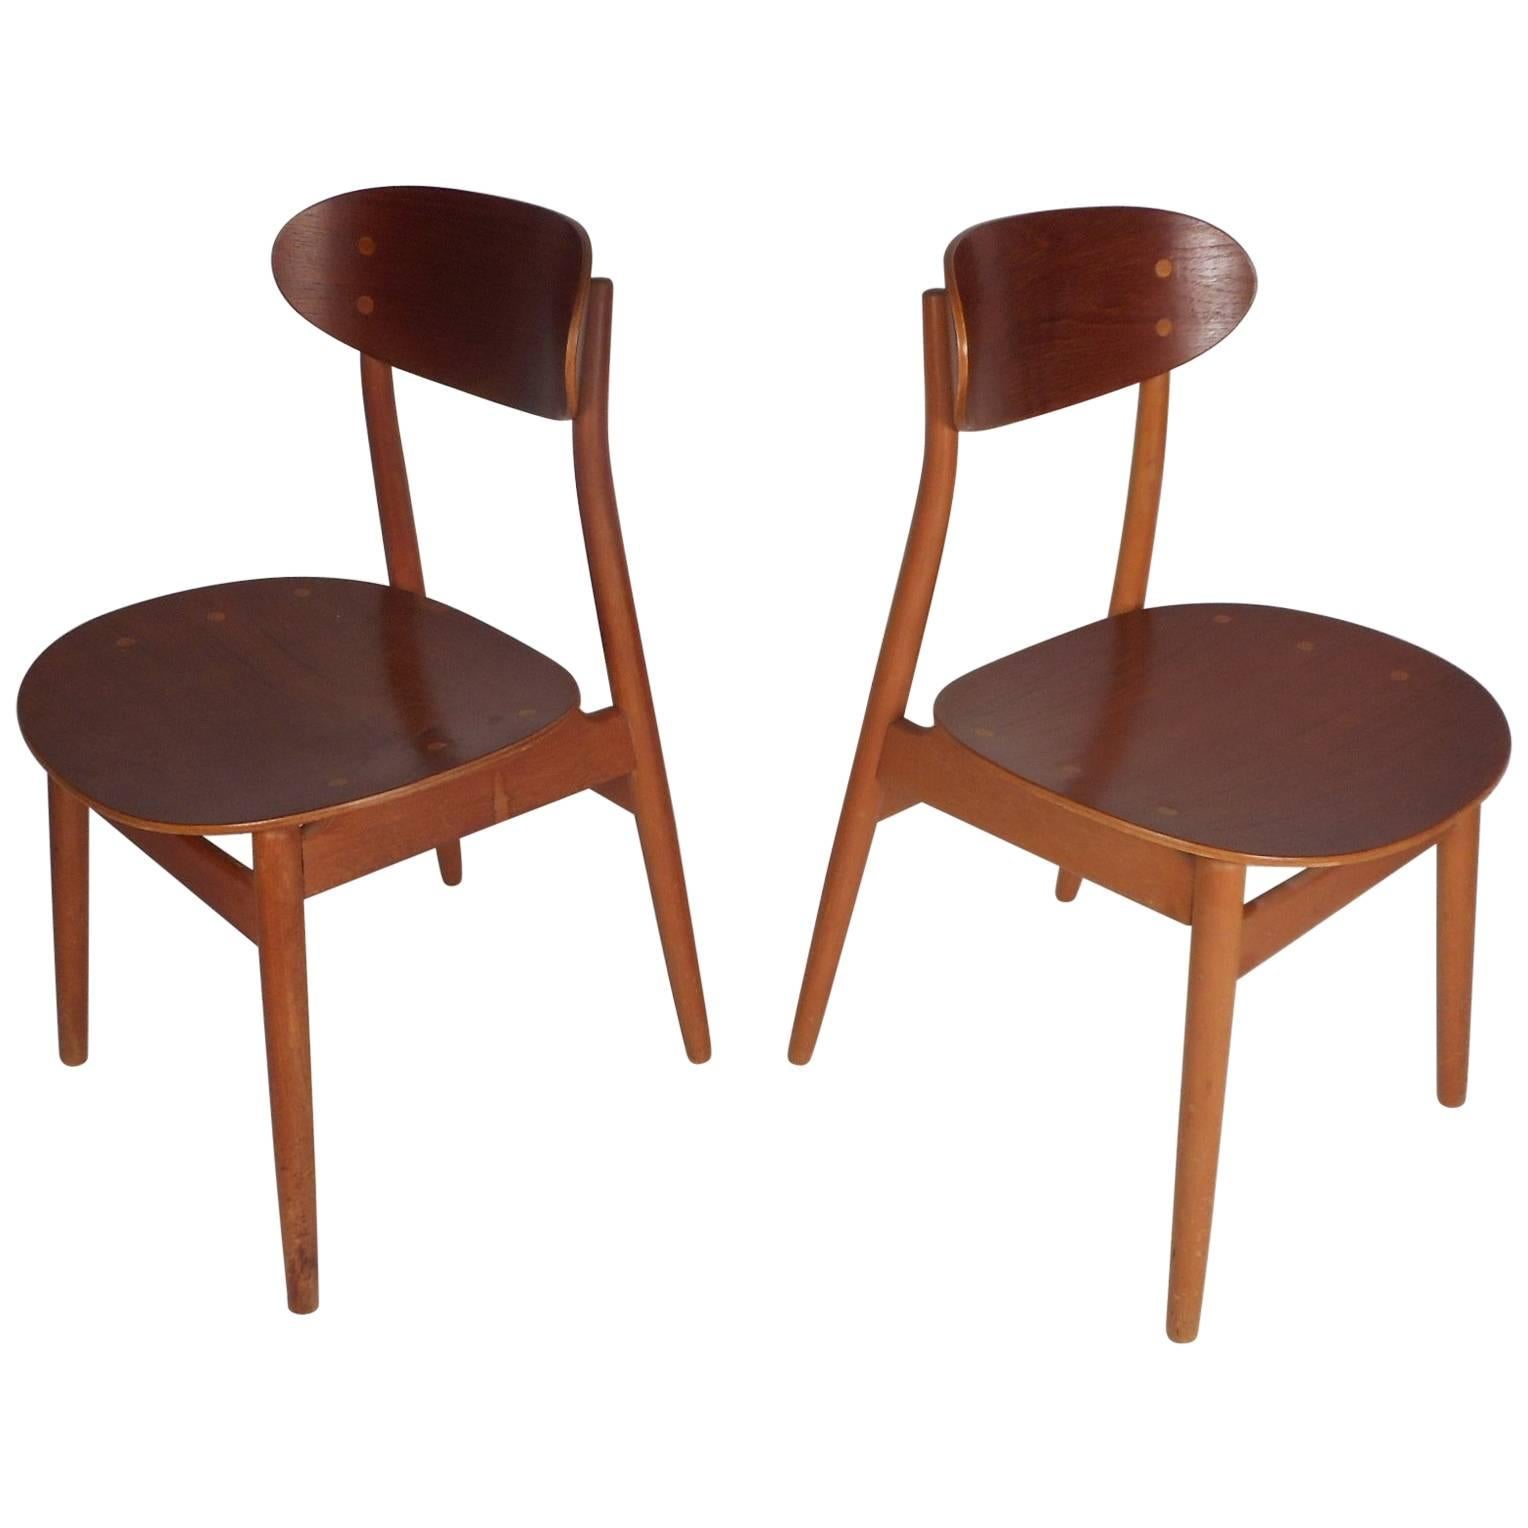 Pair of Mid-Century Modern Danish Chairs